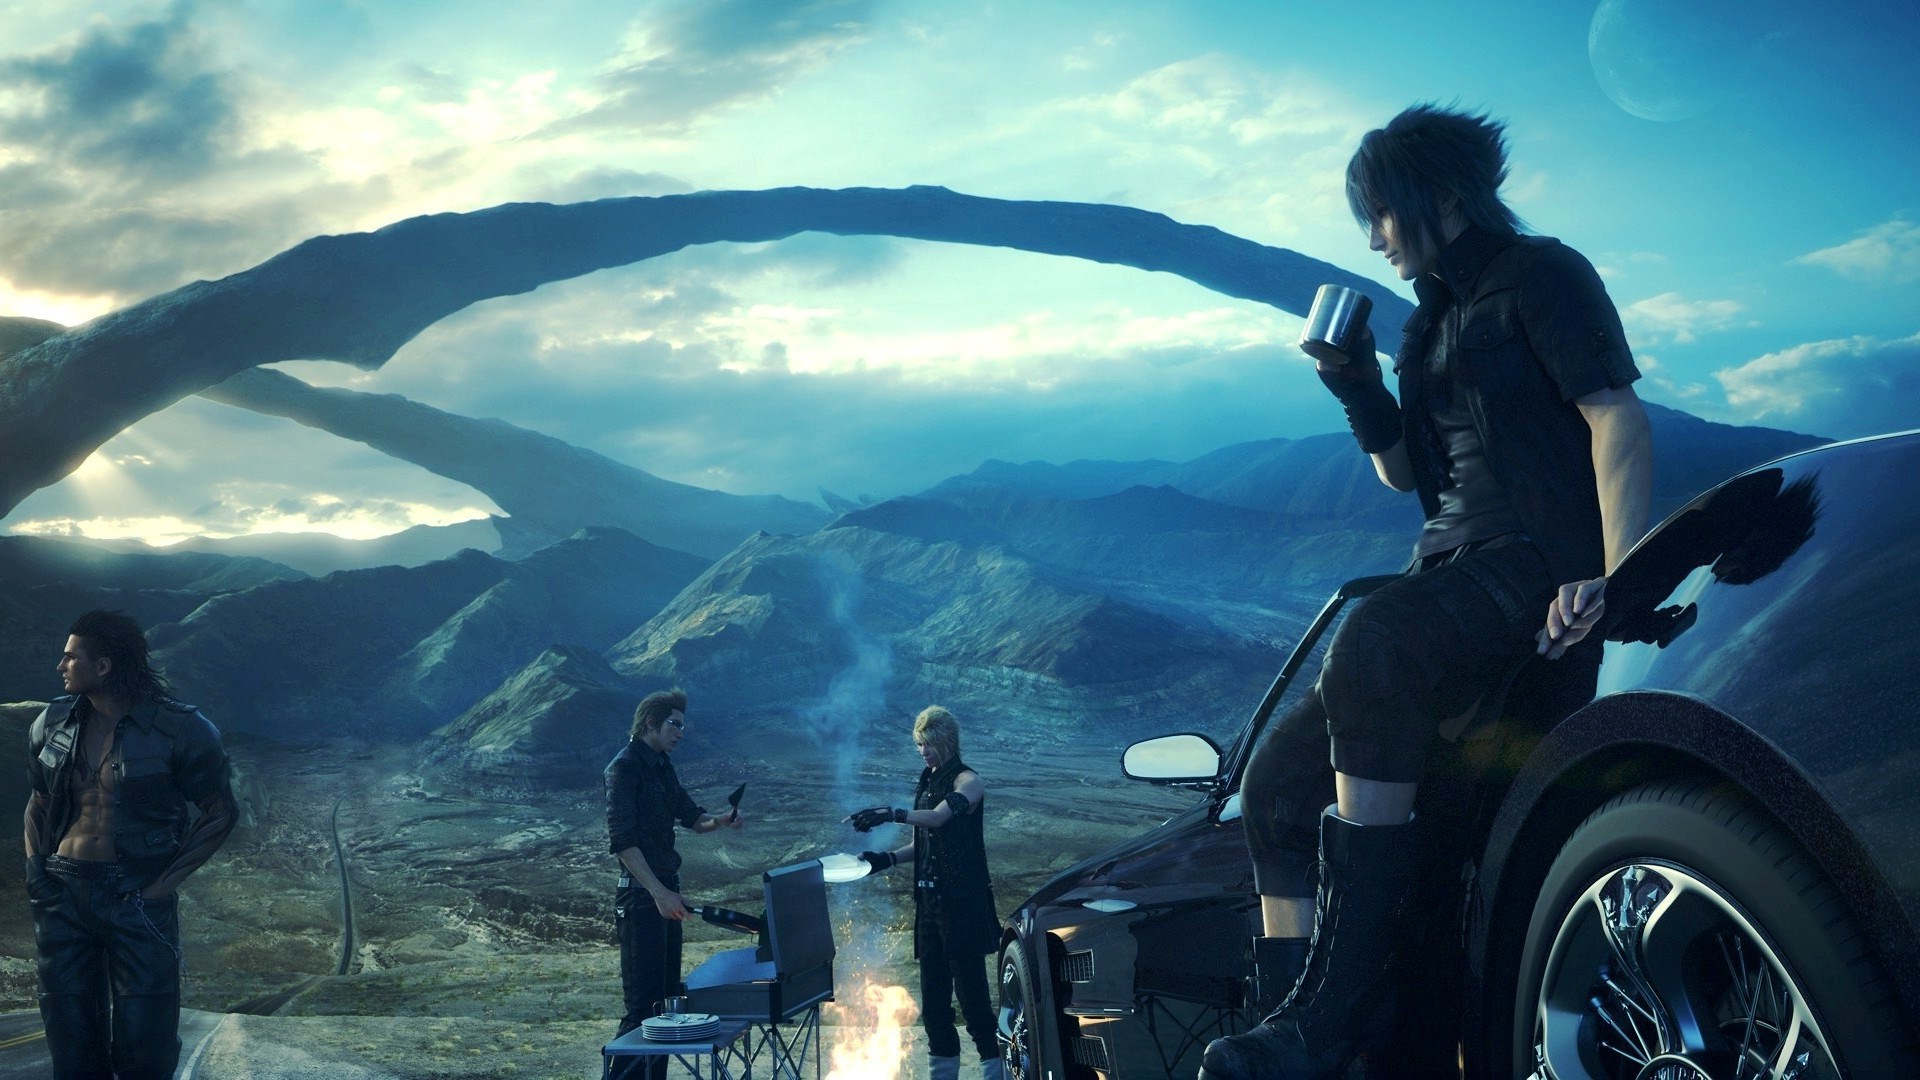 Megarecenzja Final Fantasy XV – Czy ta fantazja jest na miarę naszych czasów?